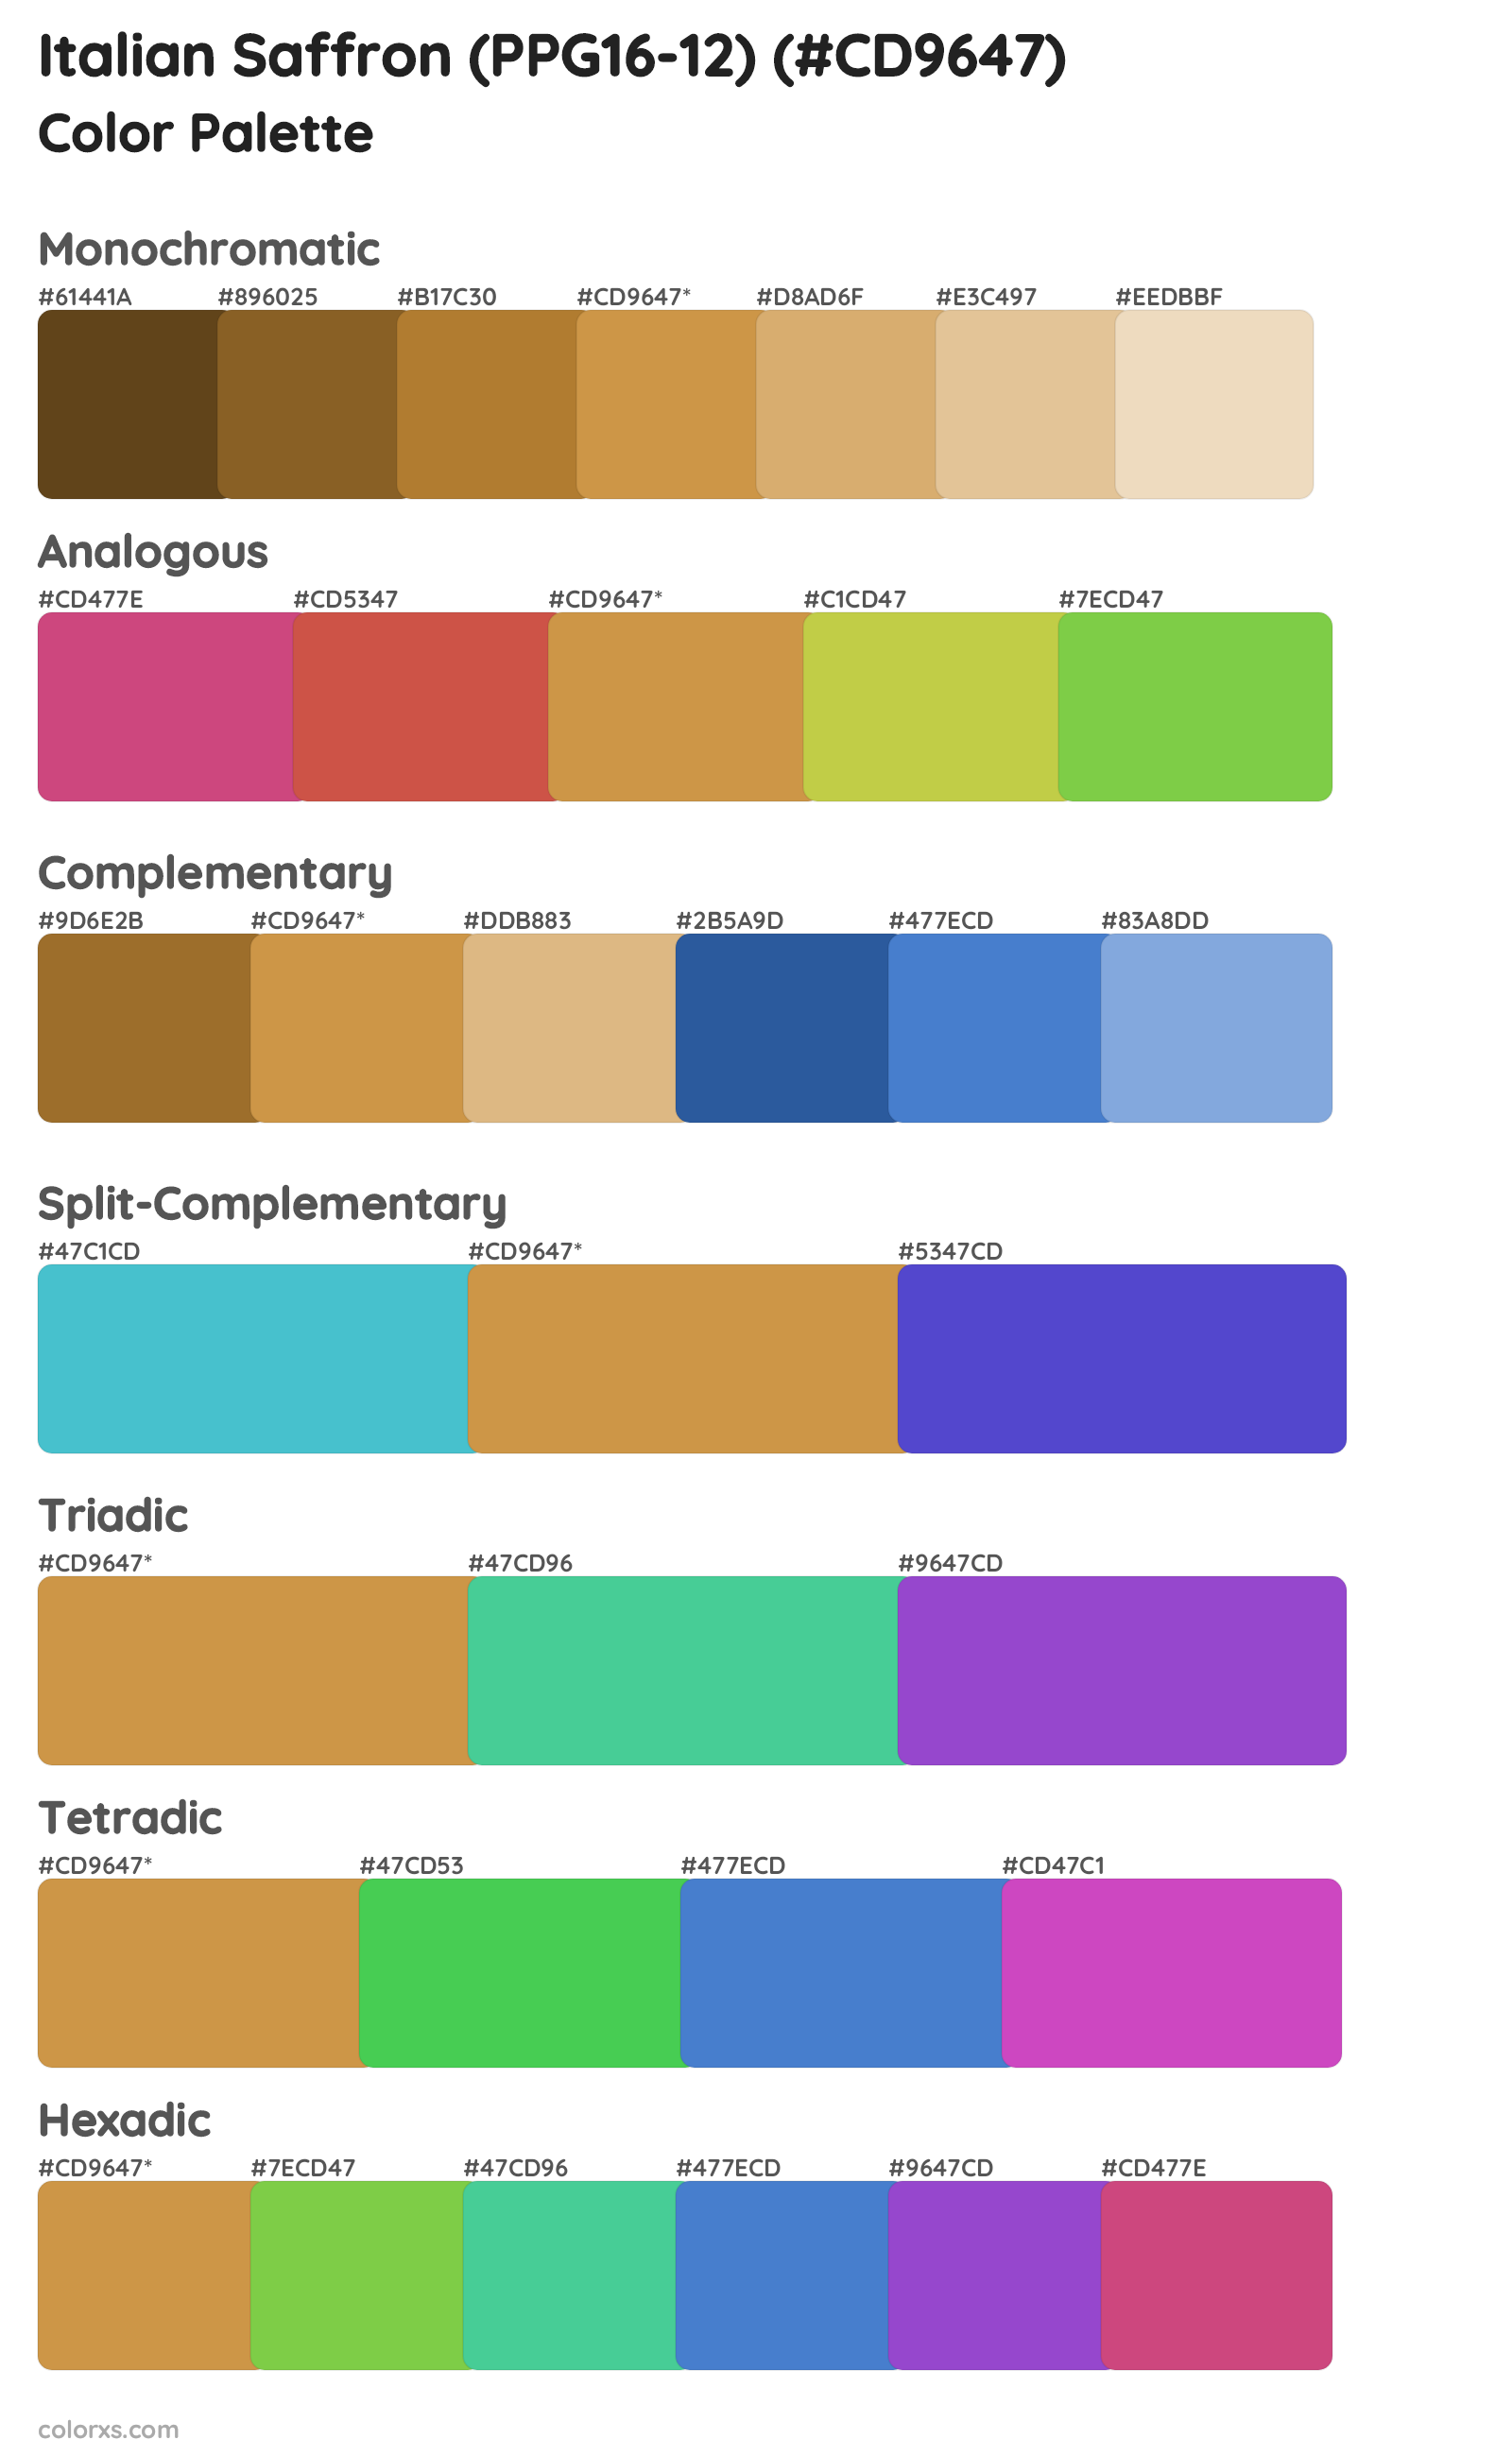 Italian Saffron (PPG16-12) Color Scheme Palettes